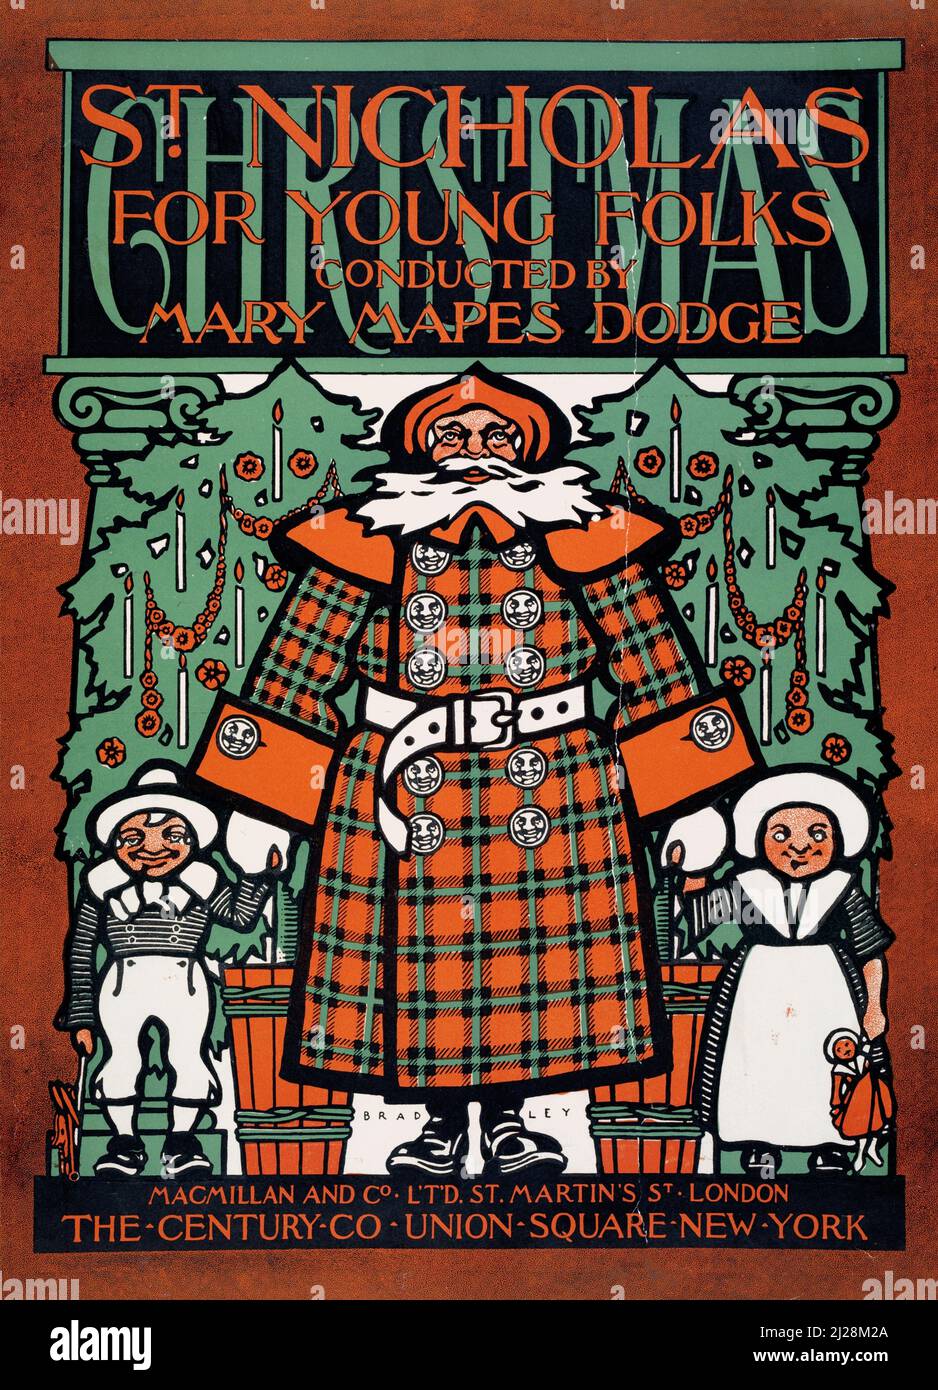 Will Bradley Artwork - St. Nichola für junge Leute. (1894-1896) American Art Nouveau - Alte und Vintage weihnachts-Poster / Magazin-Cover Stockfoto